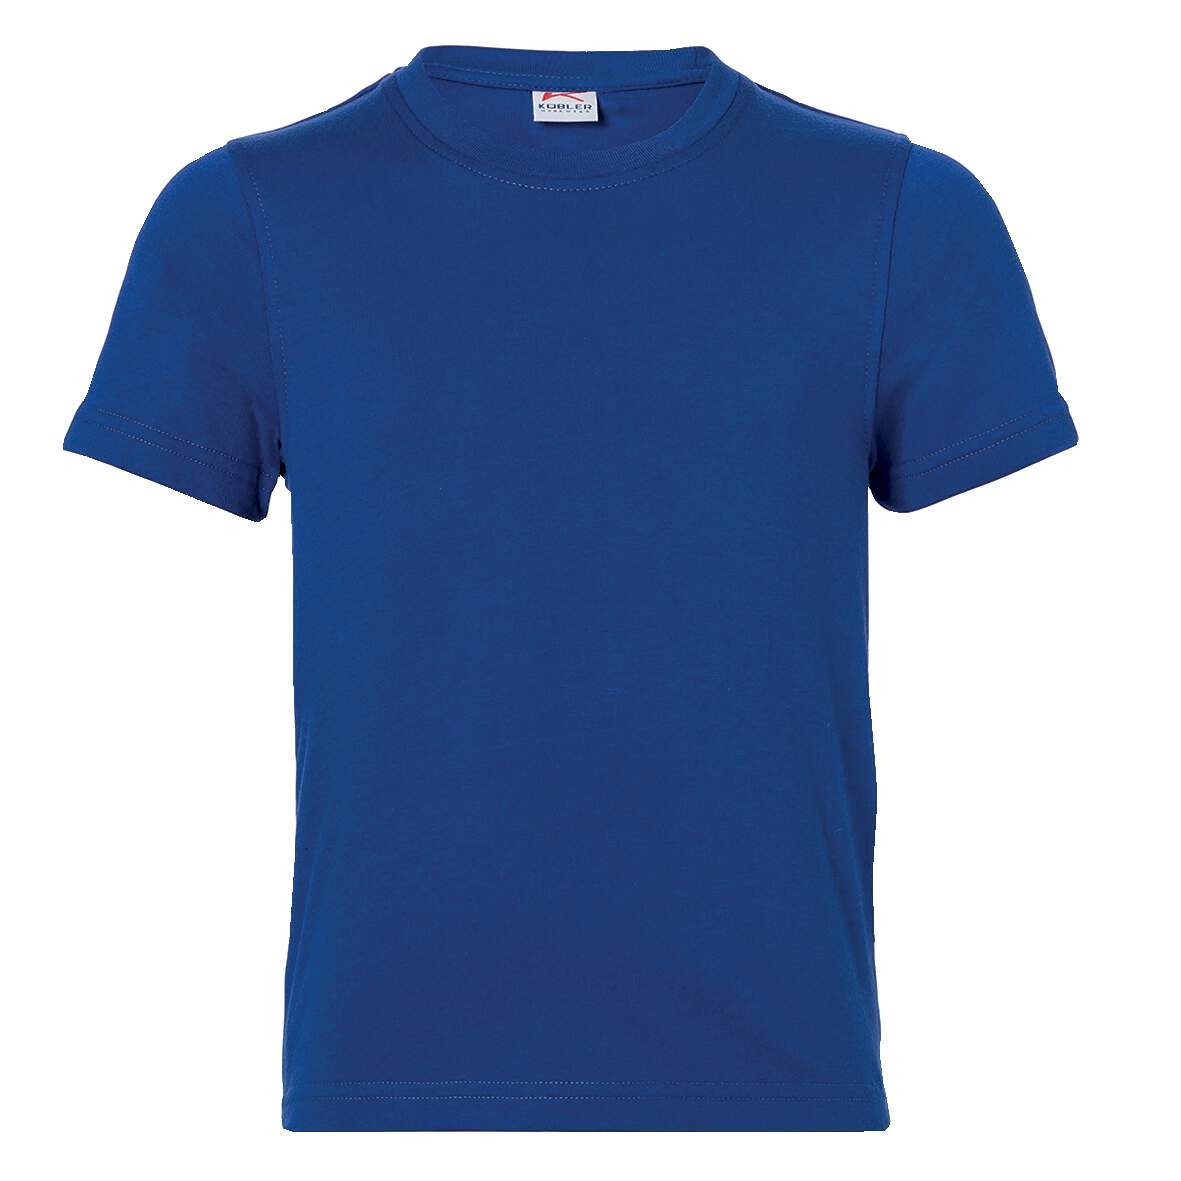 1253970 - T-Shirt Jungen Gr.116 kbl.blau